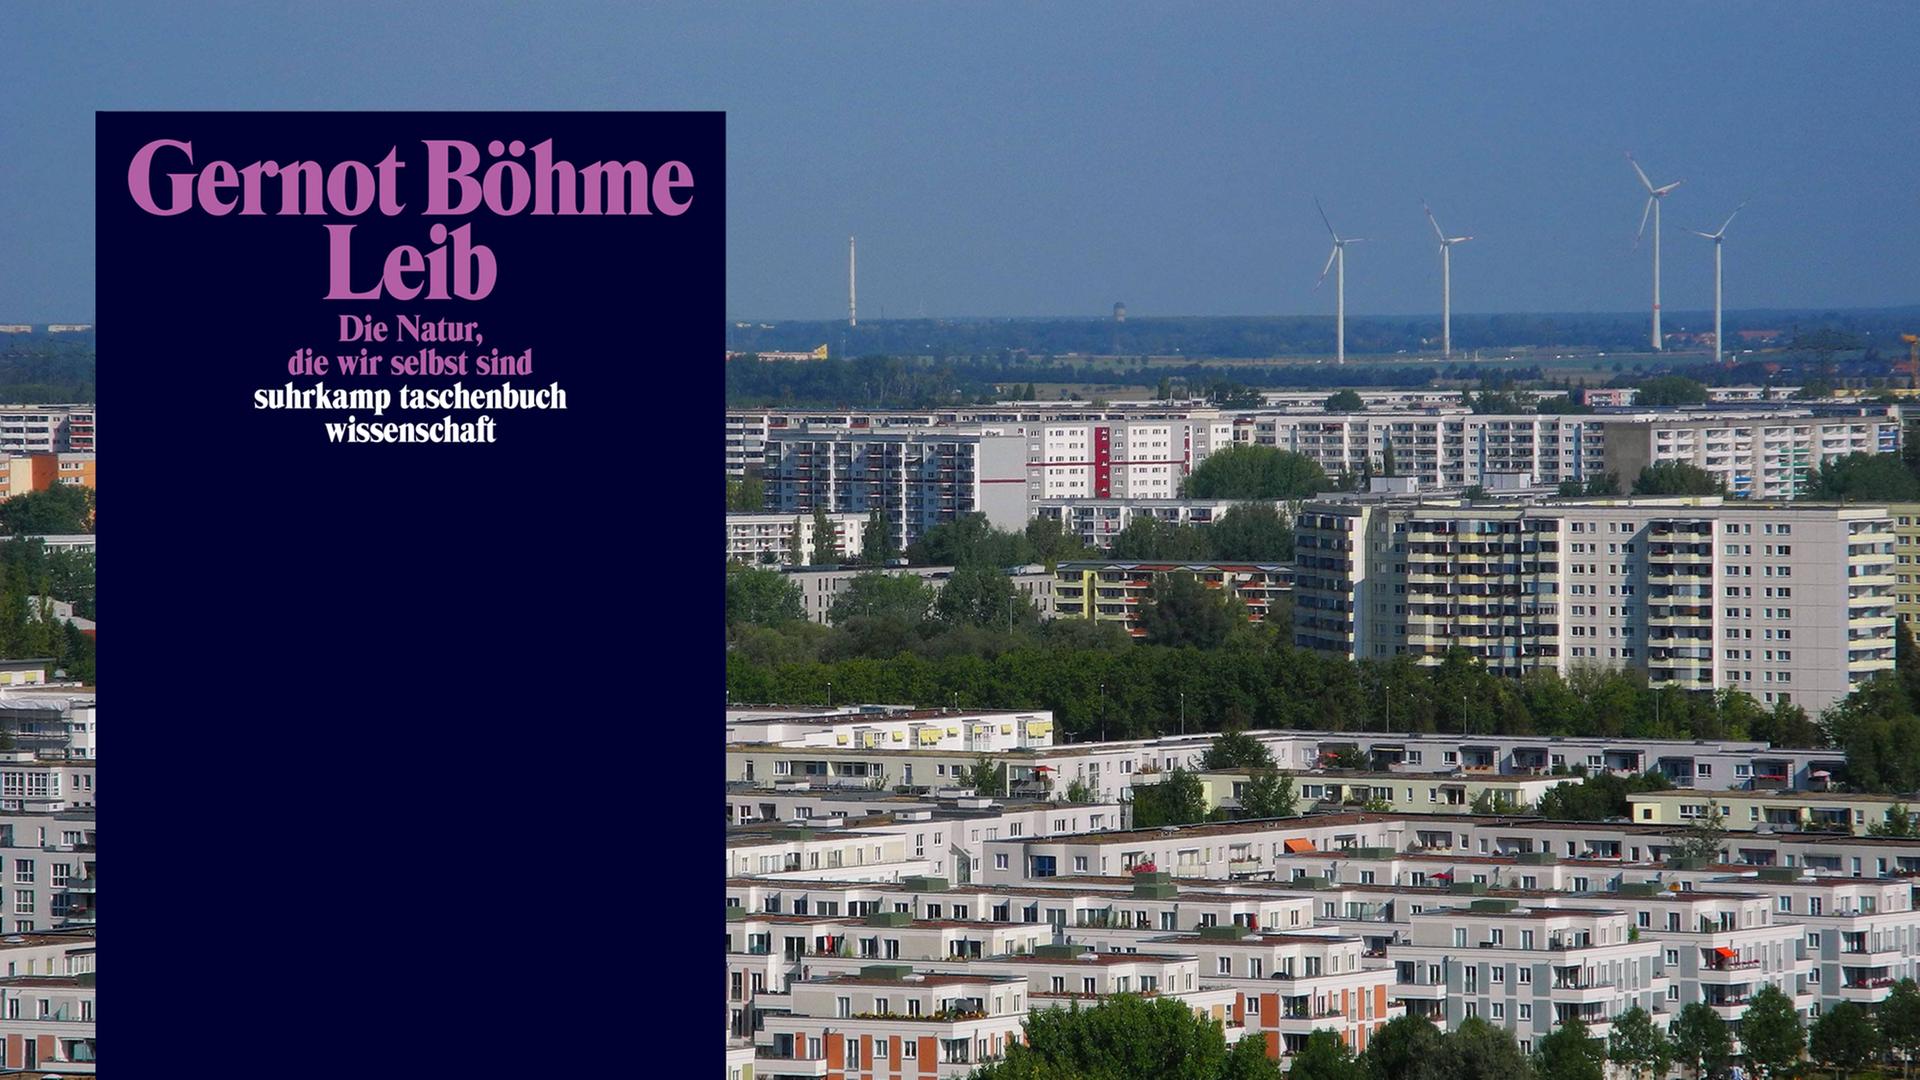 Blick auf den Berliner Stadtteil Marzahn mit vielen Plattenbauhochhäusern. Im Vordergrund ist der Buchtitel "Leib" von Gernot Böhme.